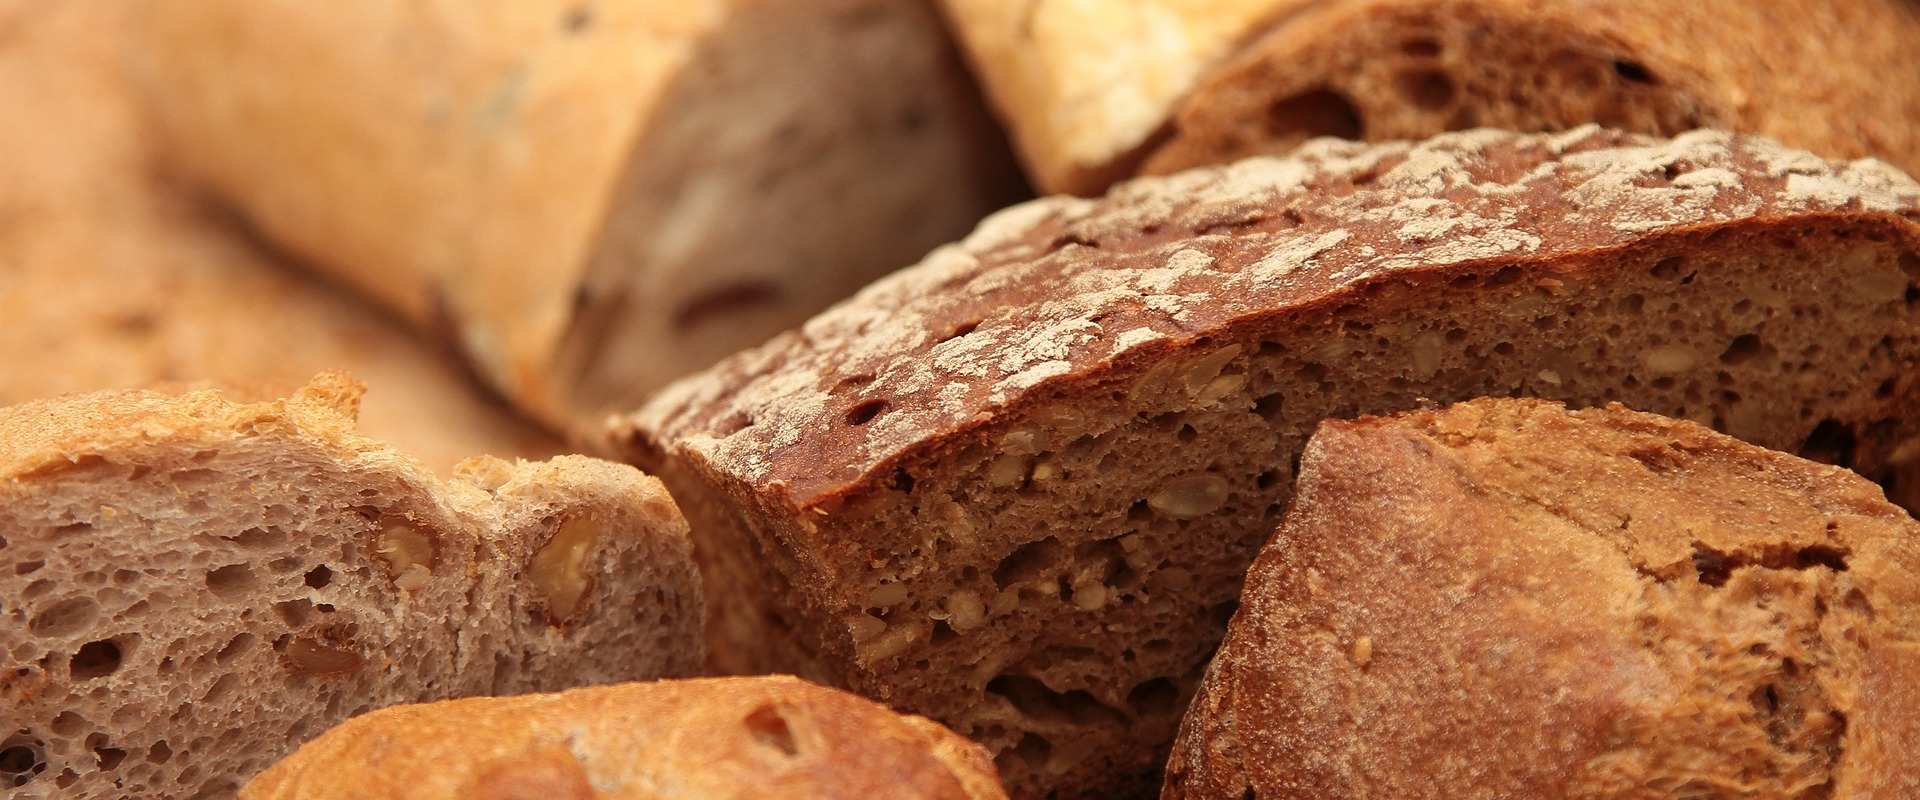 Marocco di Montignoso bread